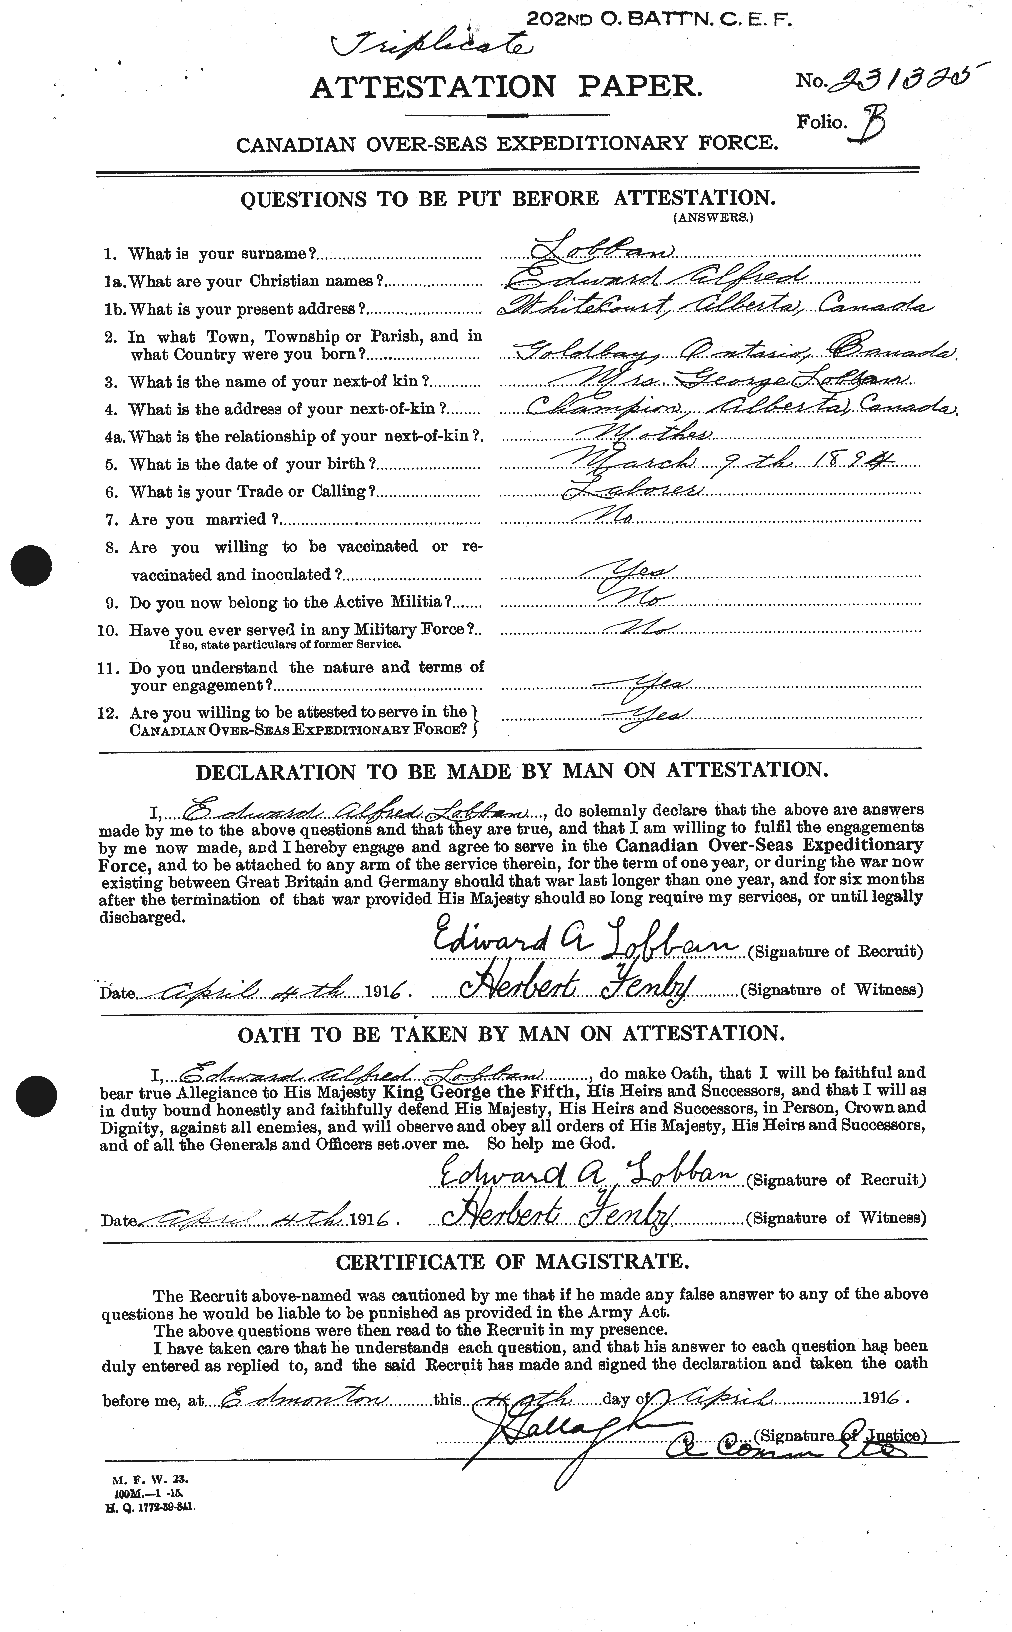 Dossiers du Personnel de la Première Guerre mondiale - CEC 472073a